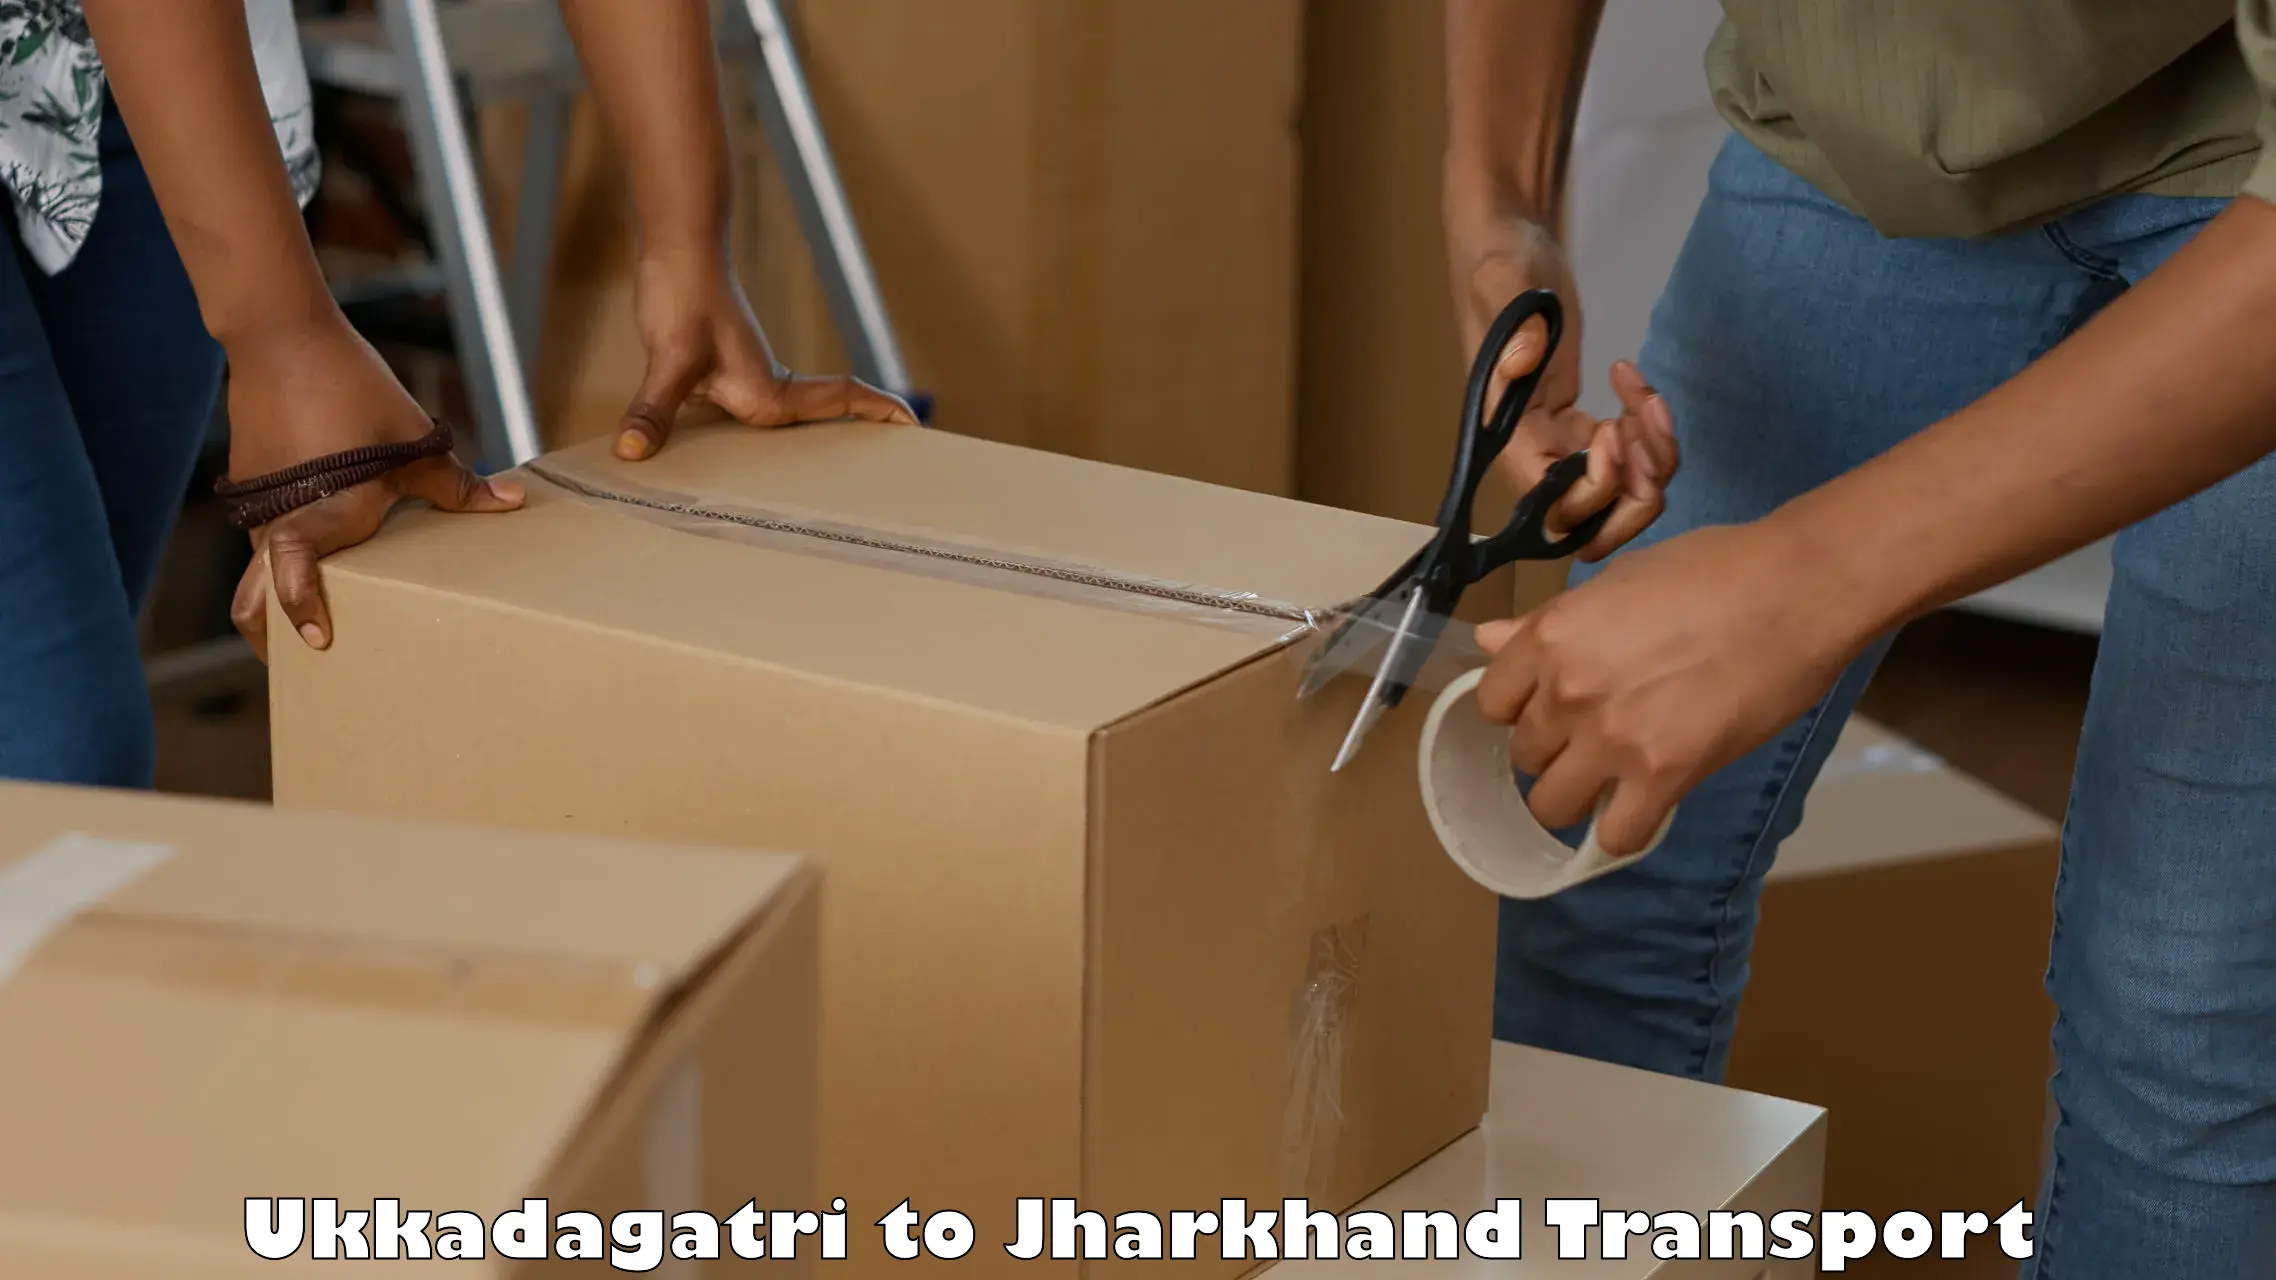 Transport in sharing Ukkadagatri to Godda